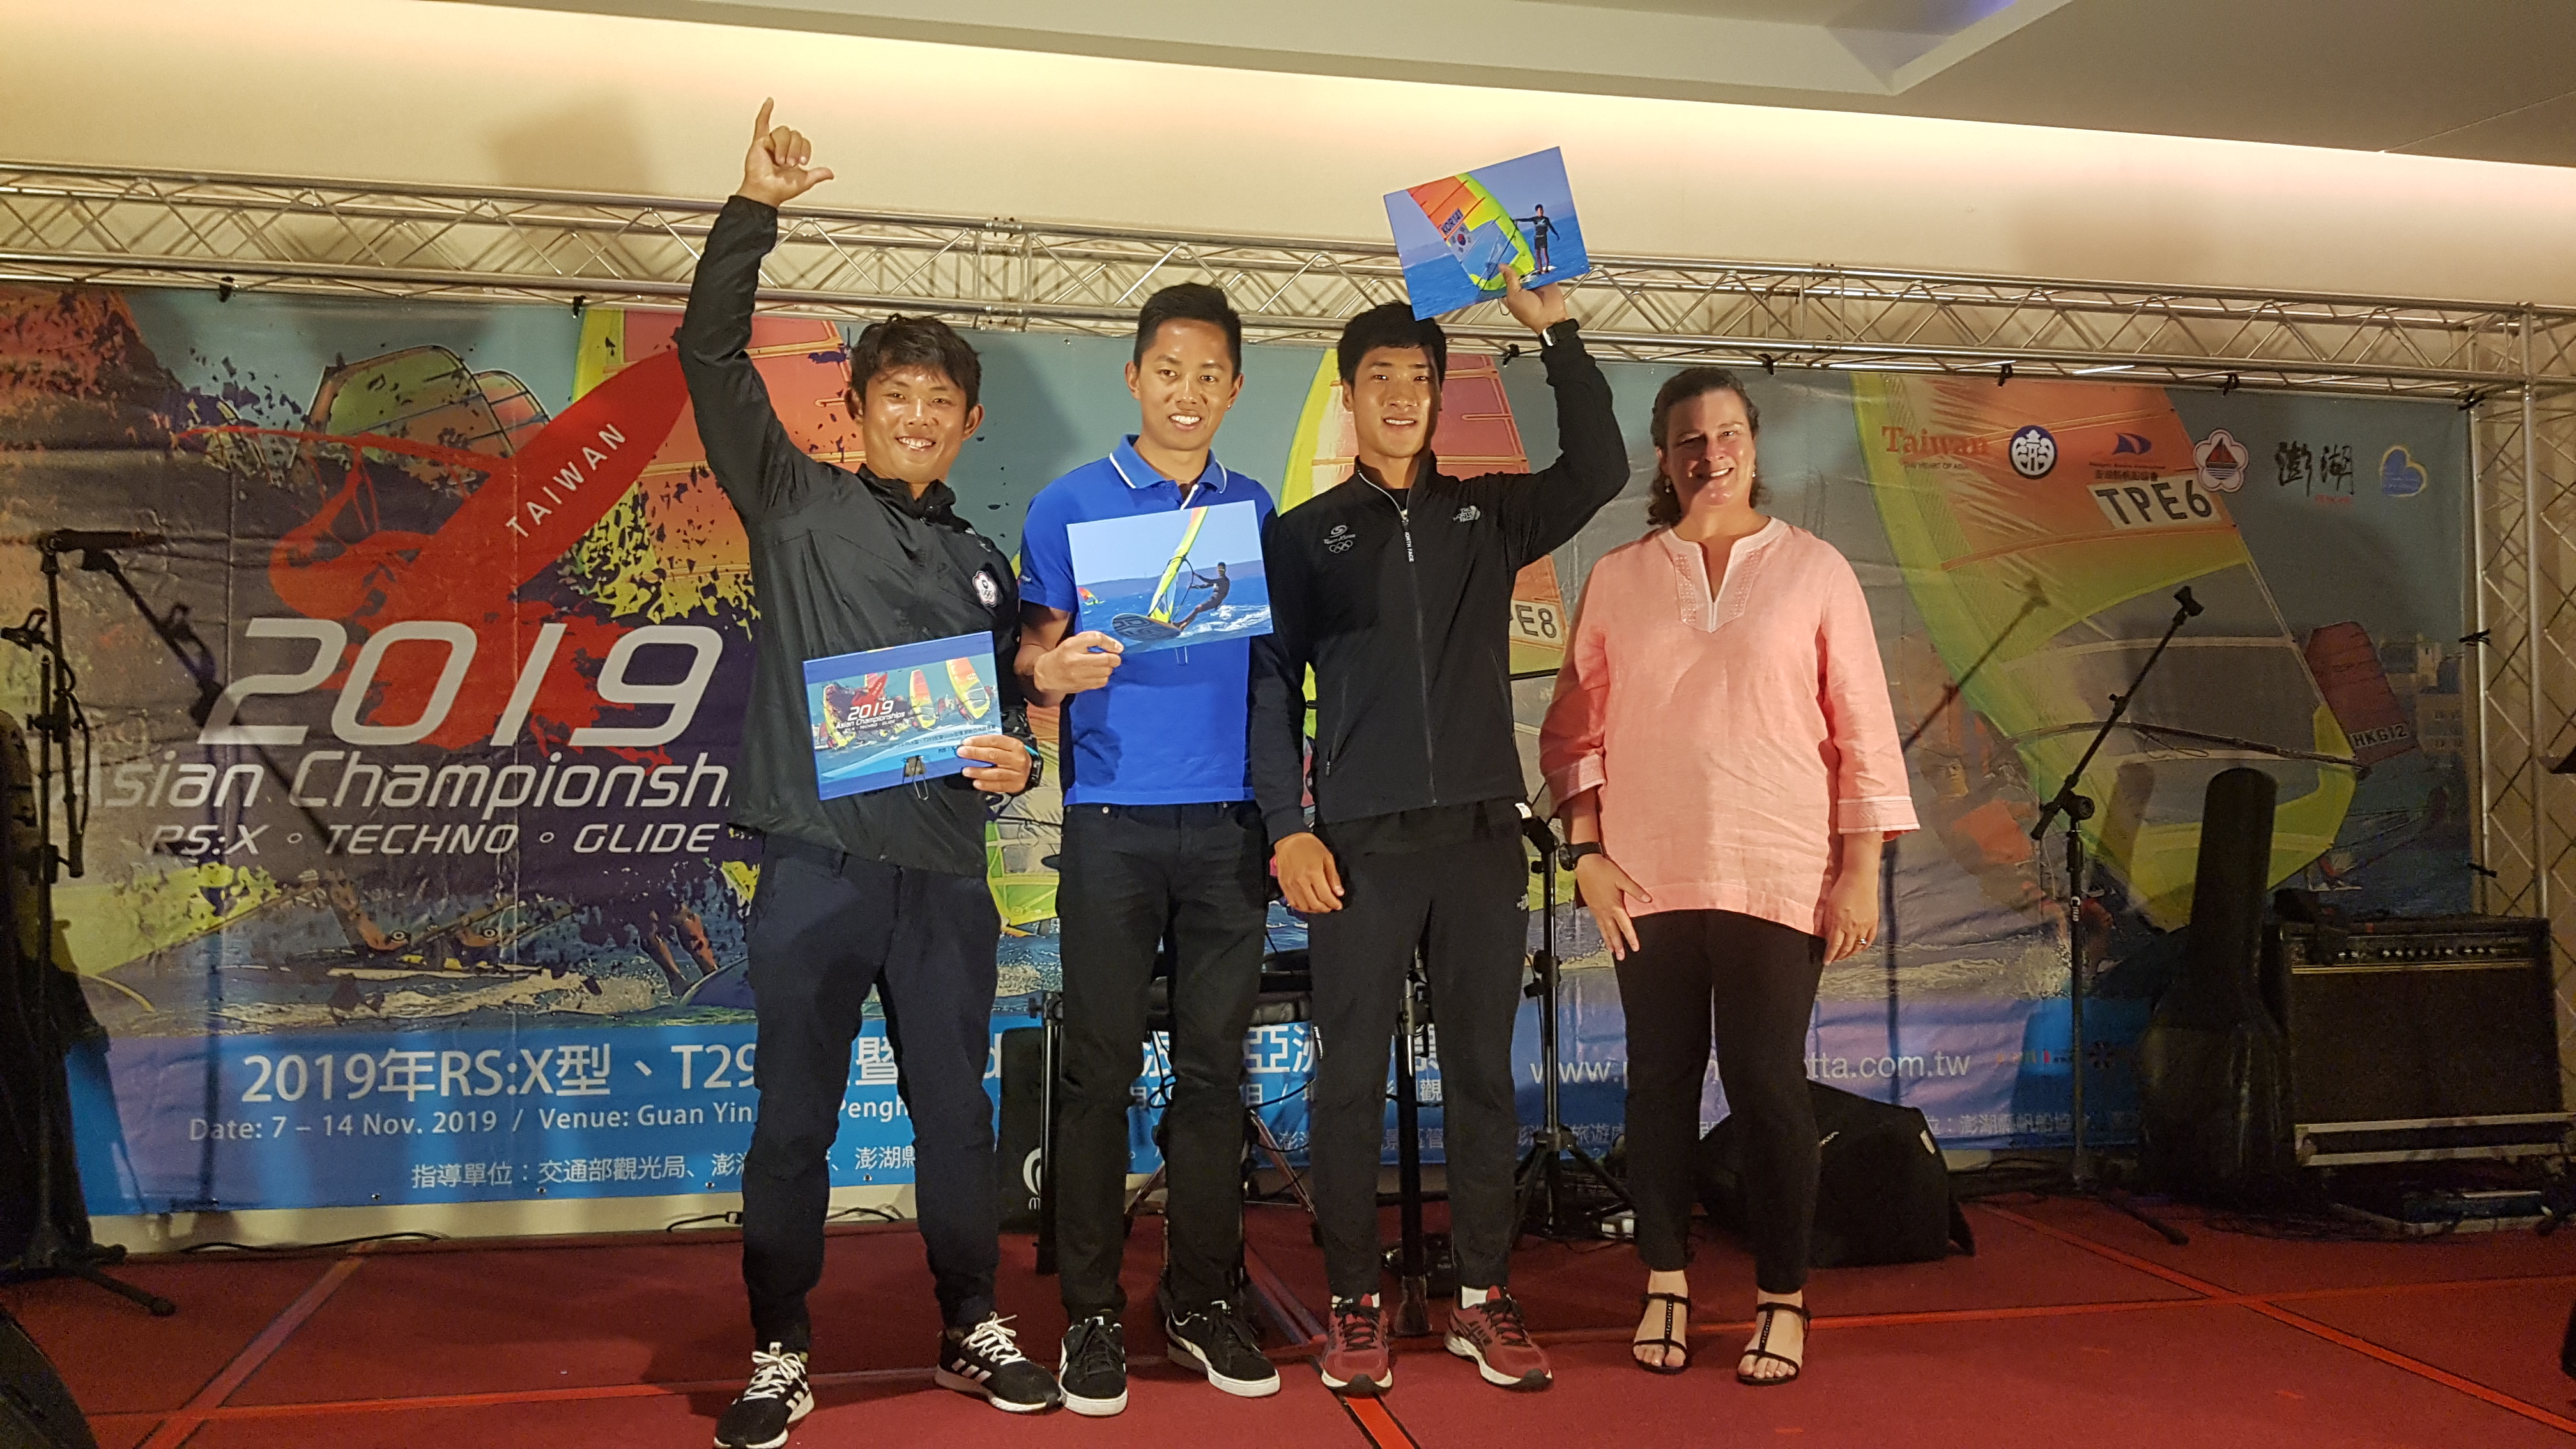 조원우 선수.. 2019 Asian windsurfing championship 우승